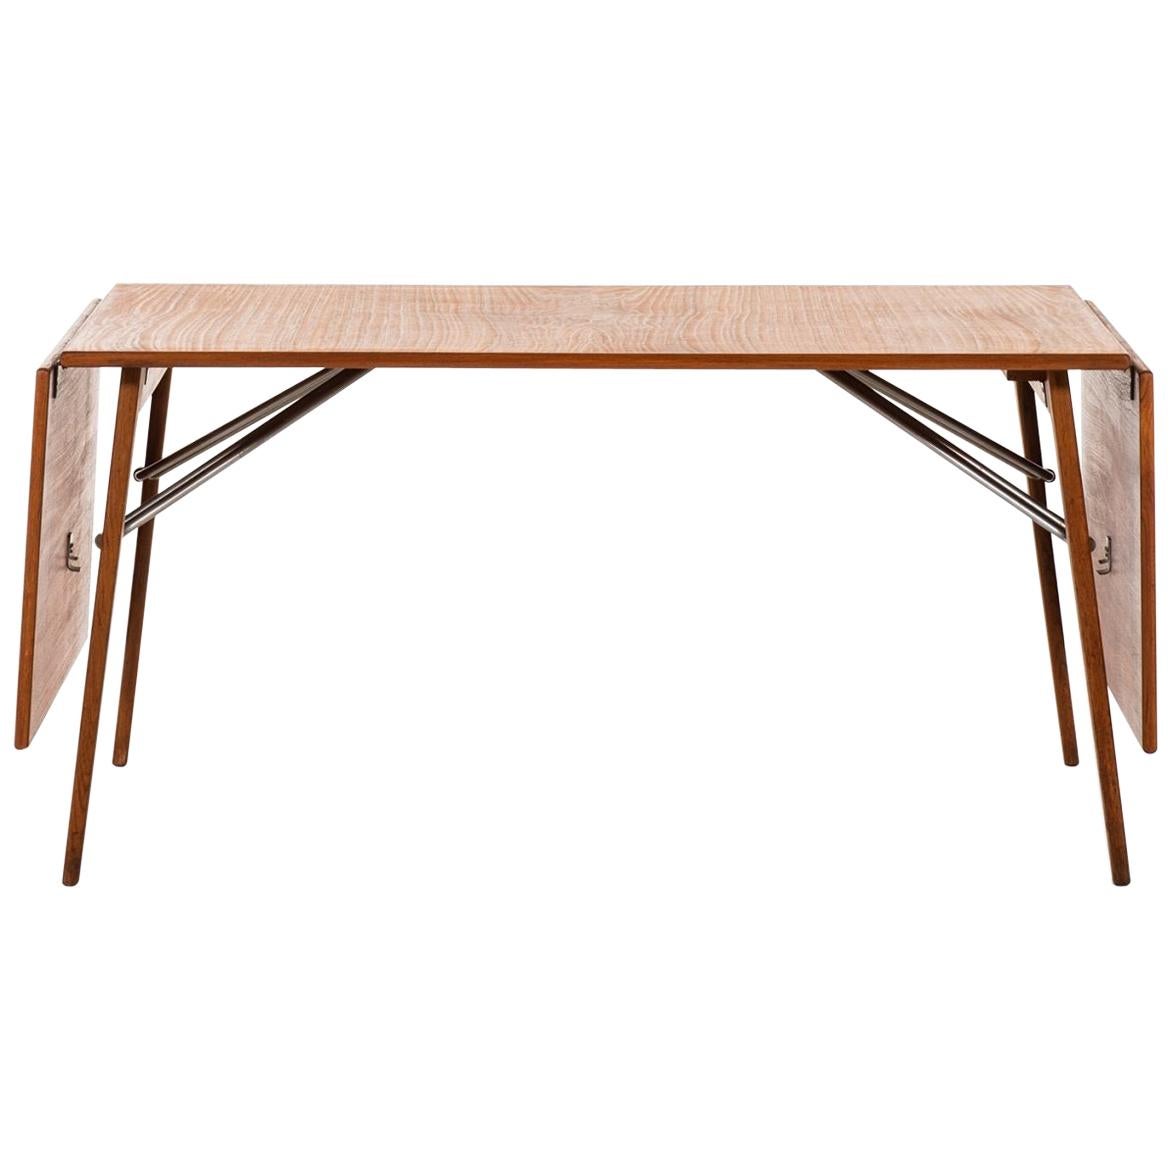 Esstisch oder Schreibtisch von Sborg Mbler, Mogensen, hergestellt von Sborg Mbler in Dänemark